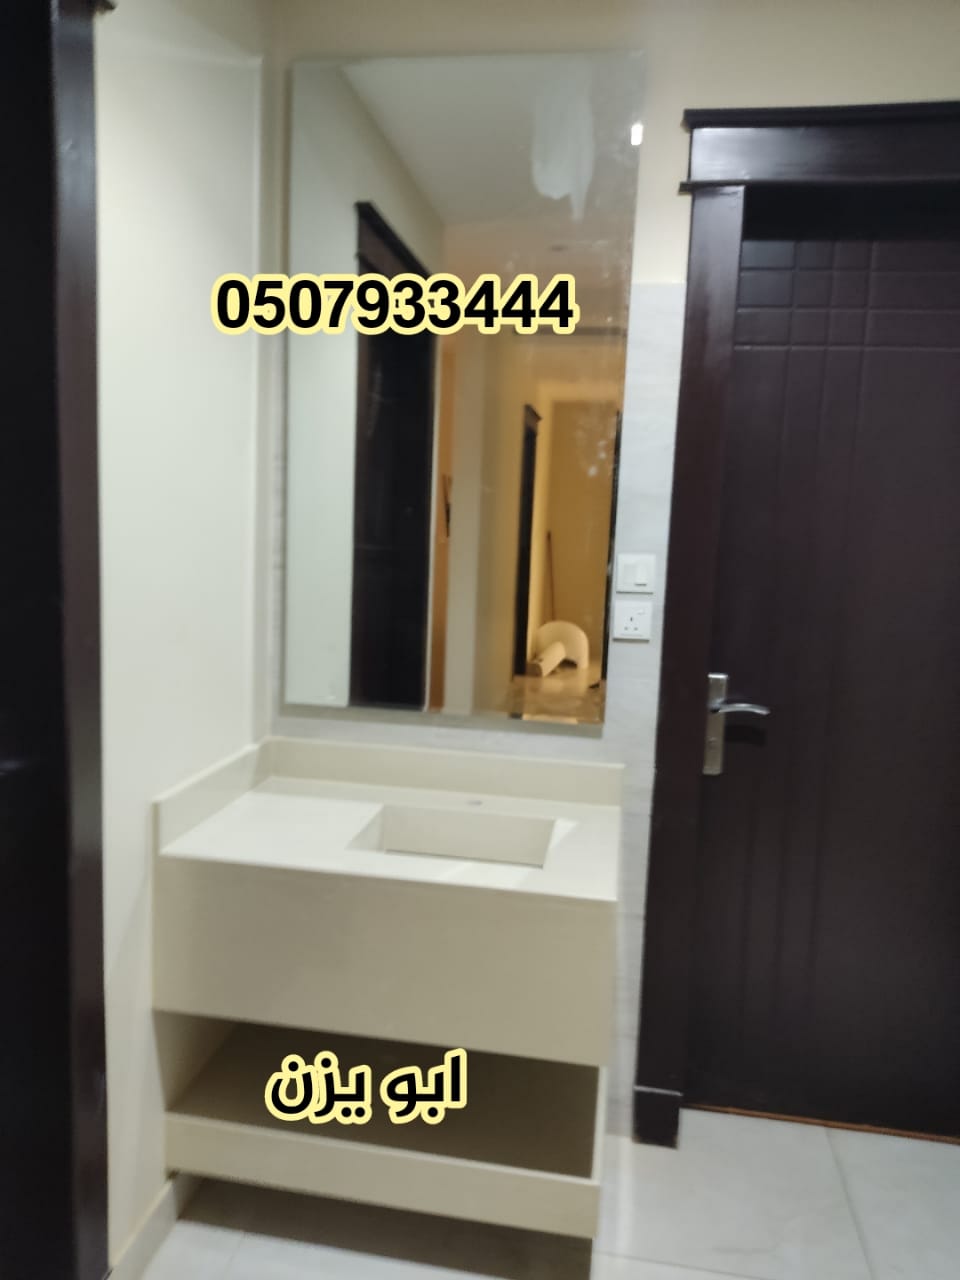  > مغاسل رخام ، تركيب وتفصيل مغاسل رخام حمامات في الرياض